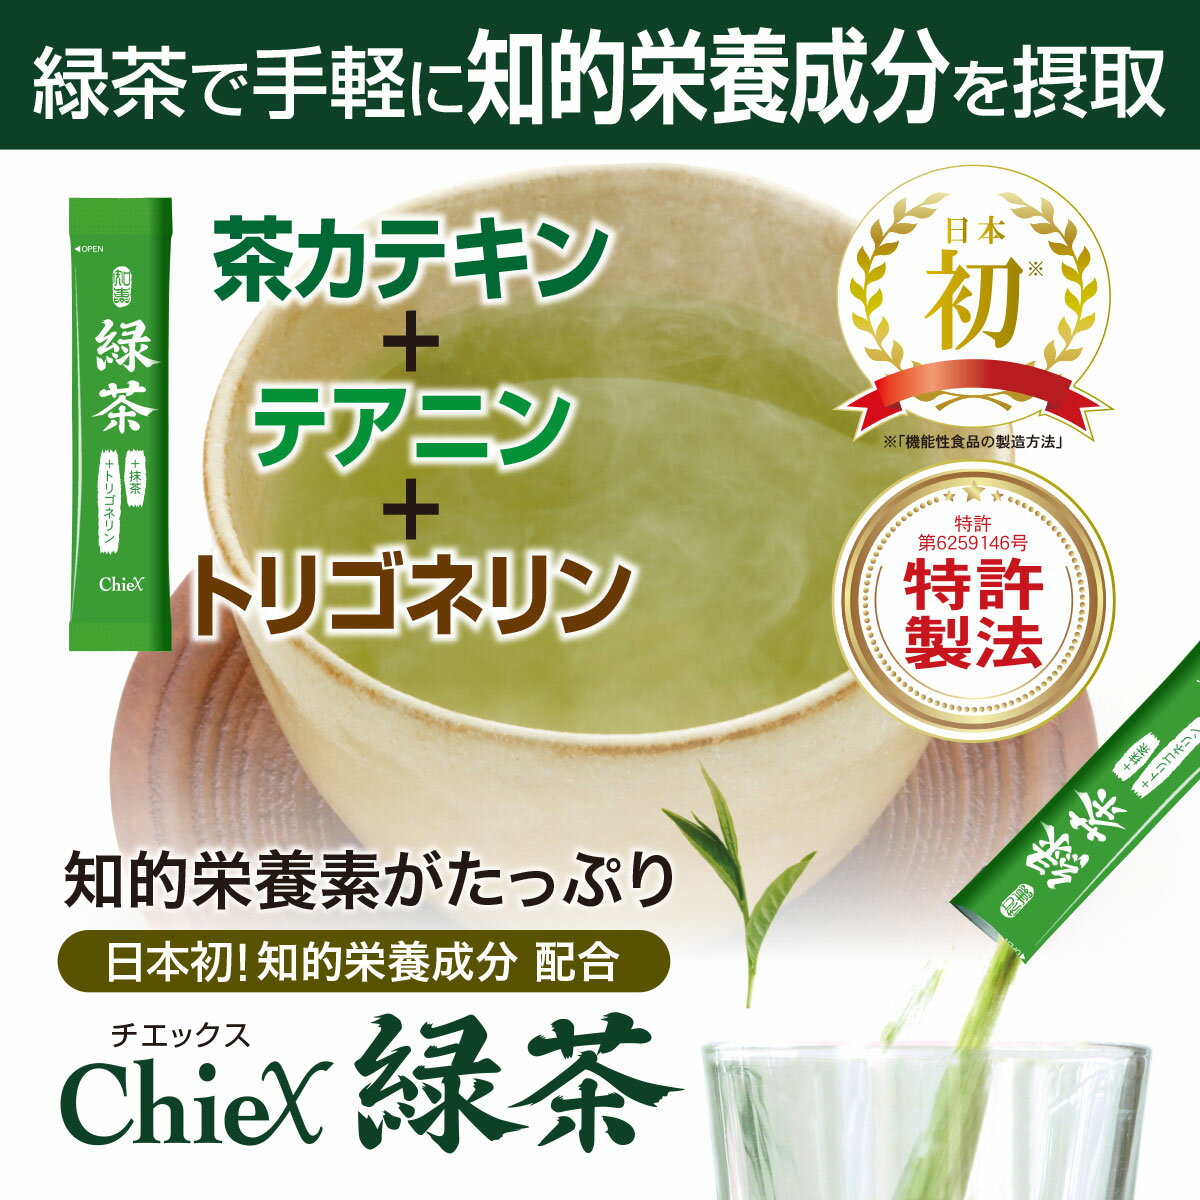 緑茶 -トリゴネリン&抹茶入り-(1.5g×3...の紹介画像3